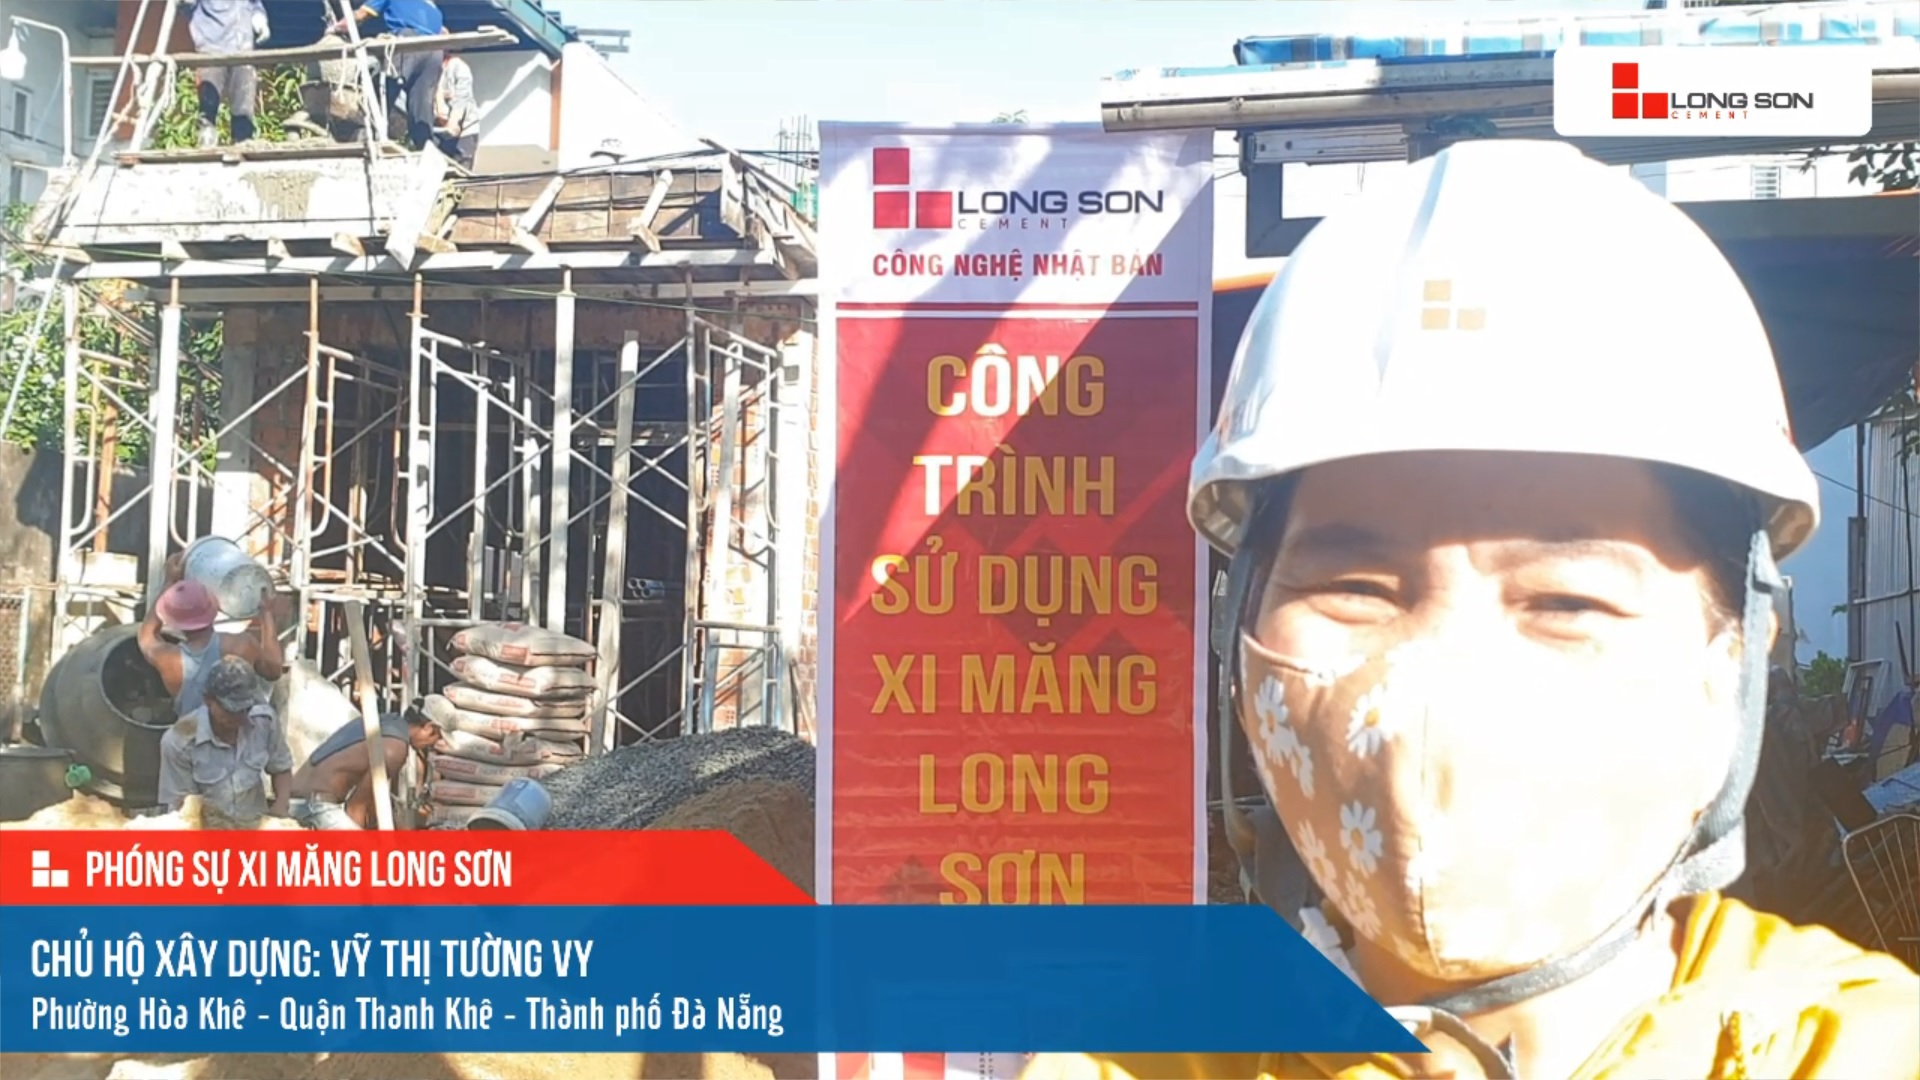 Phóng sự công trình sử dụng xi măng Long Sơn tại Đà Nẵng ngày 05/11/2021